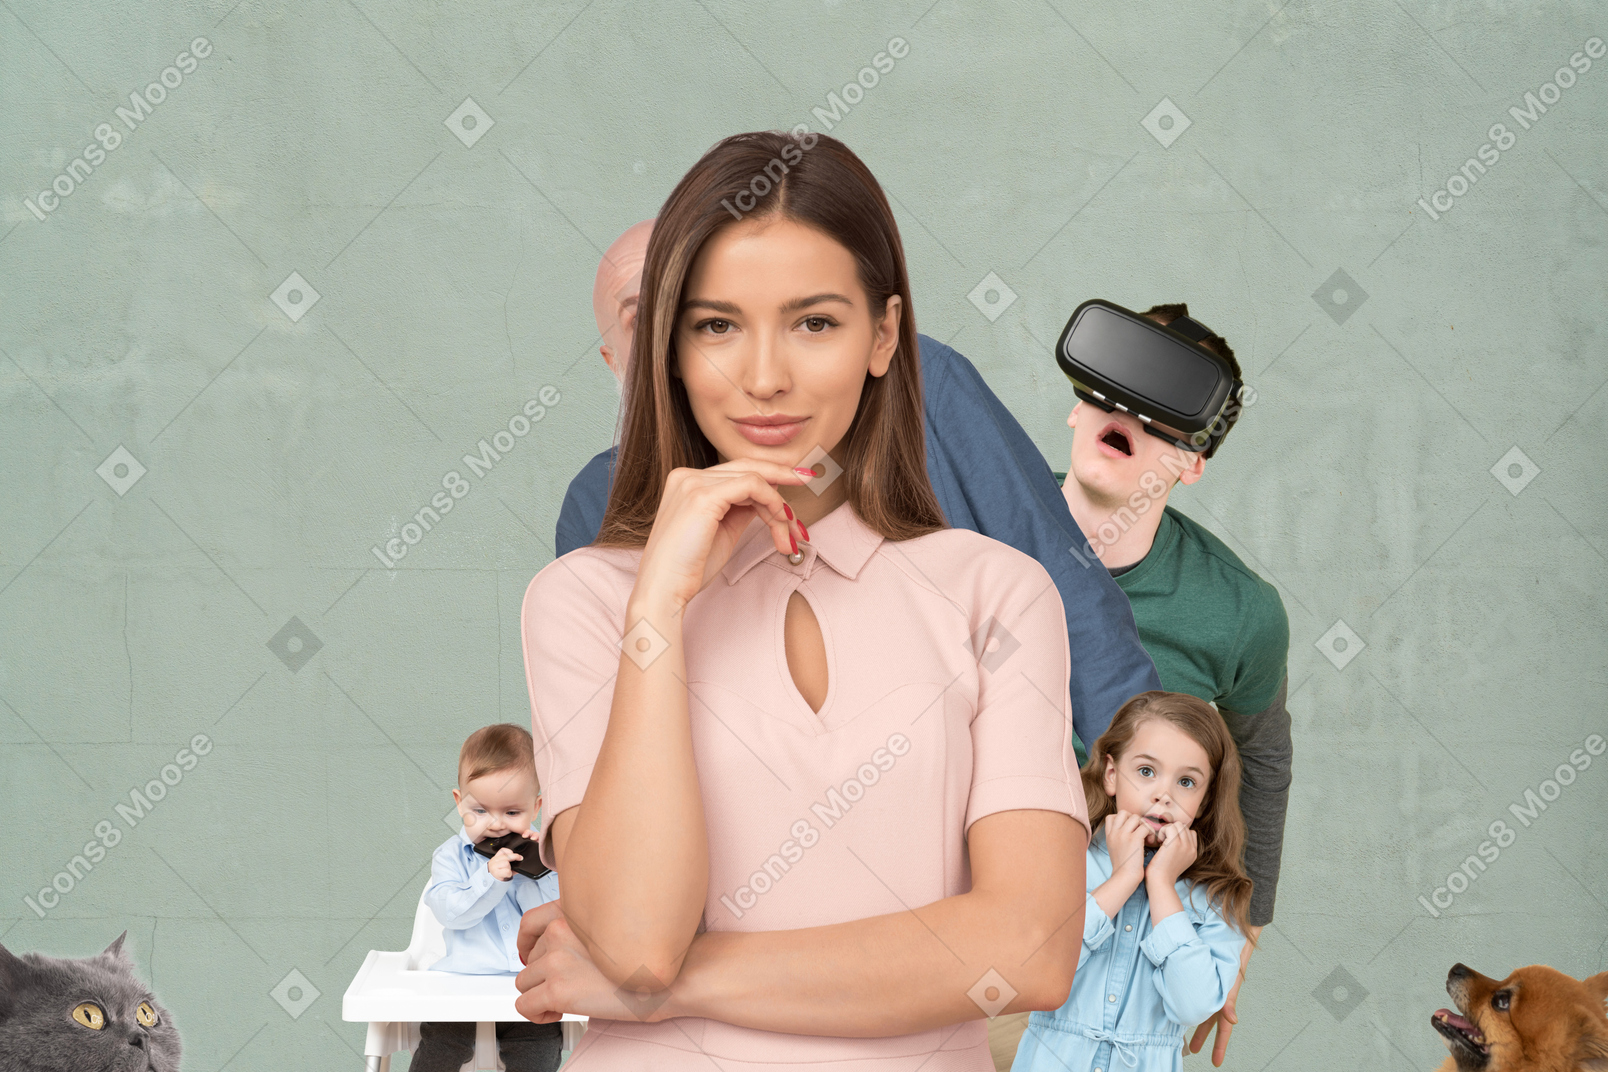 Mann, babymädchen und teenager mit virtual-reality-brille verstecken sich hinter einer schönen lächelnden frau, einer katze und einem spitzhund, die von einer seite auf sie schauen, und einem kleinen jungen